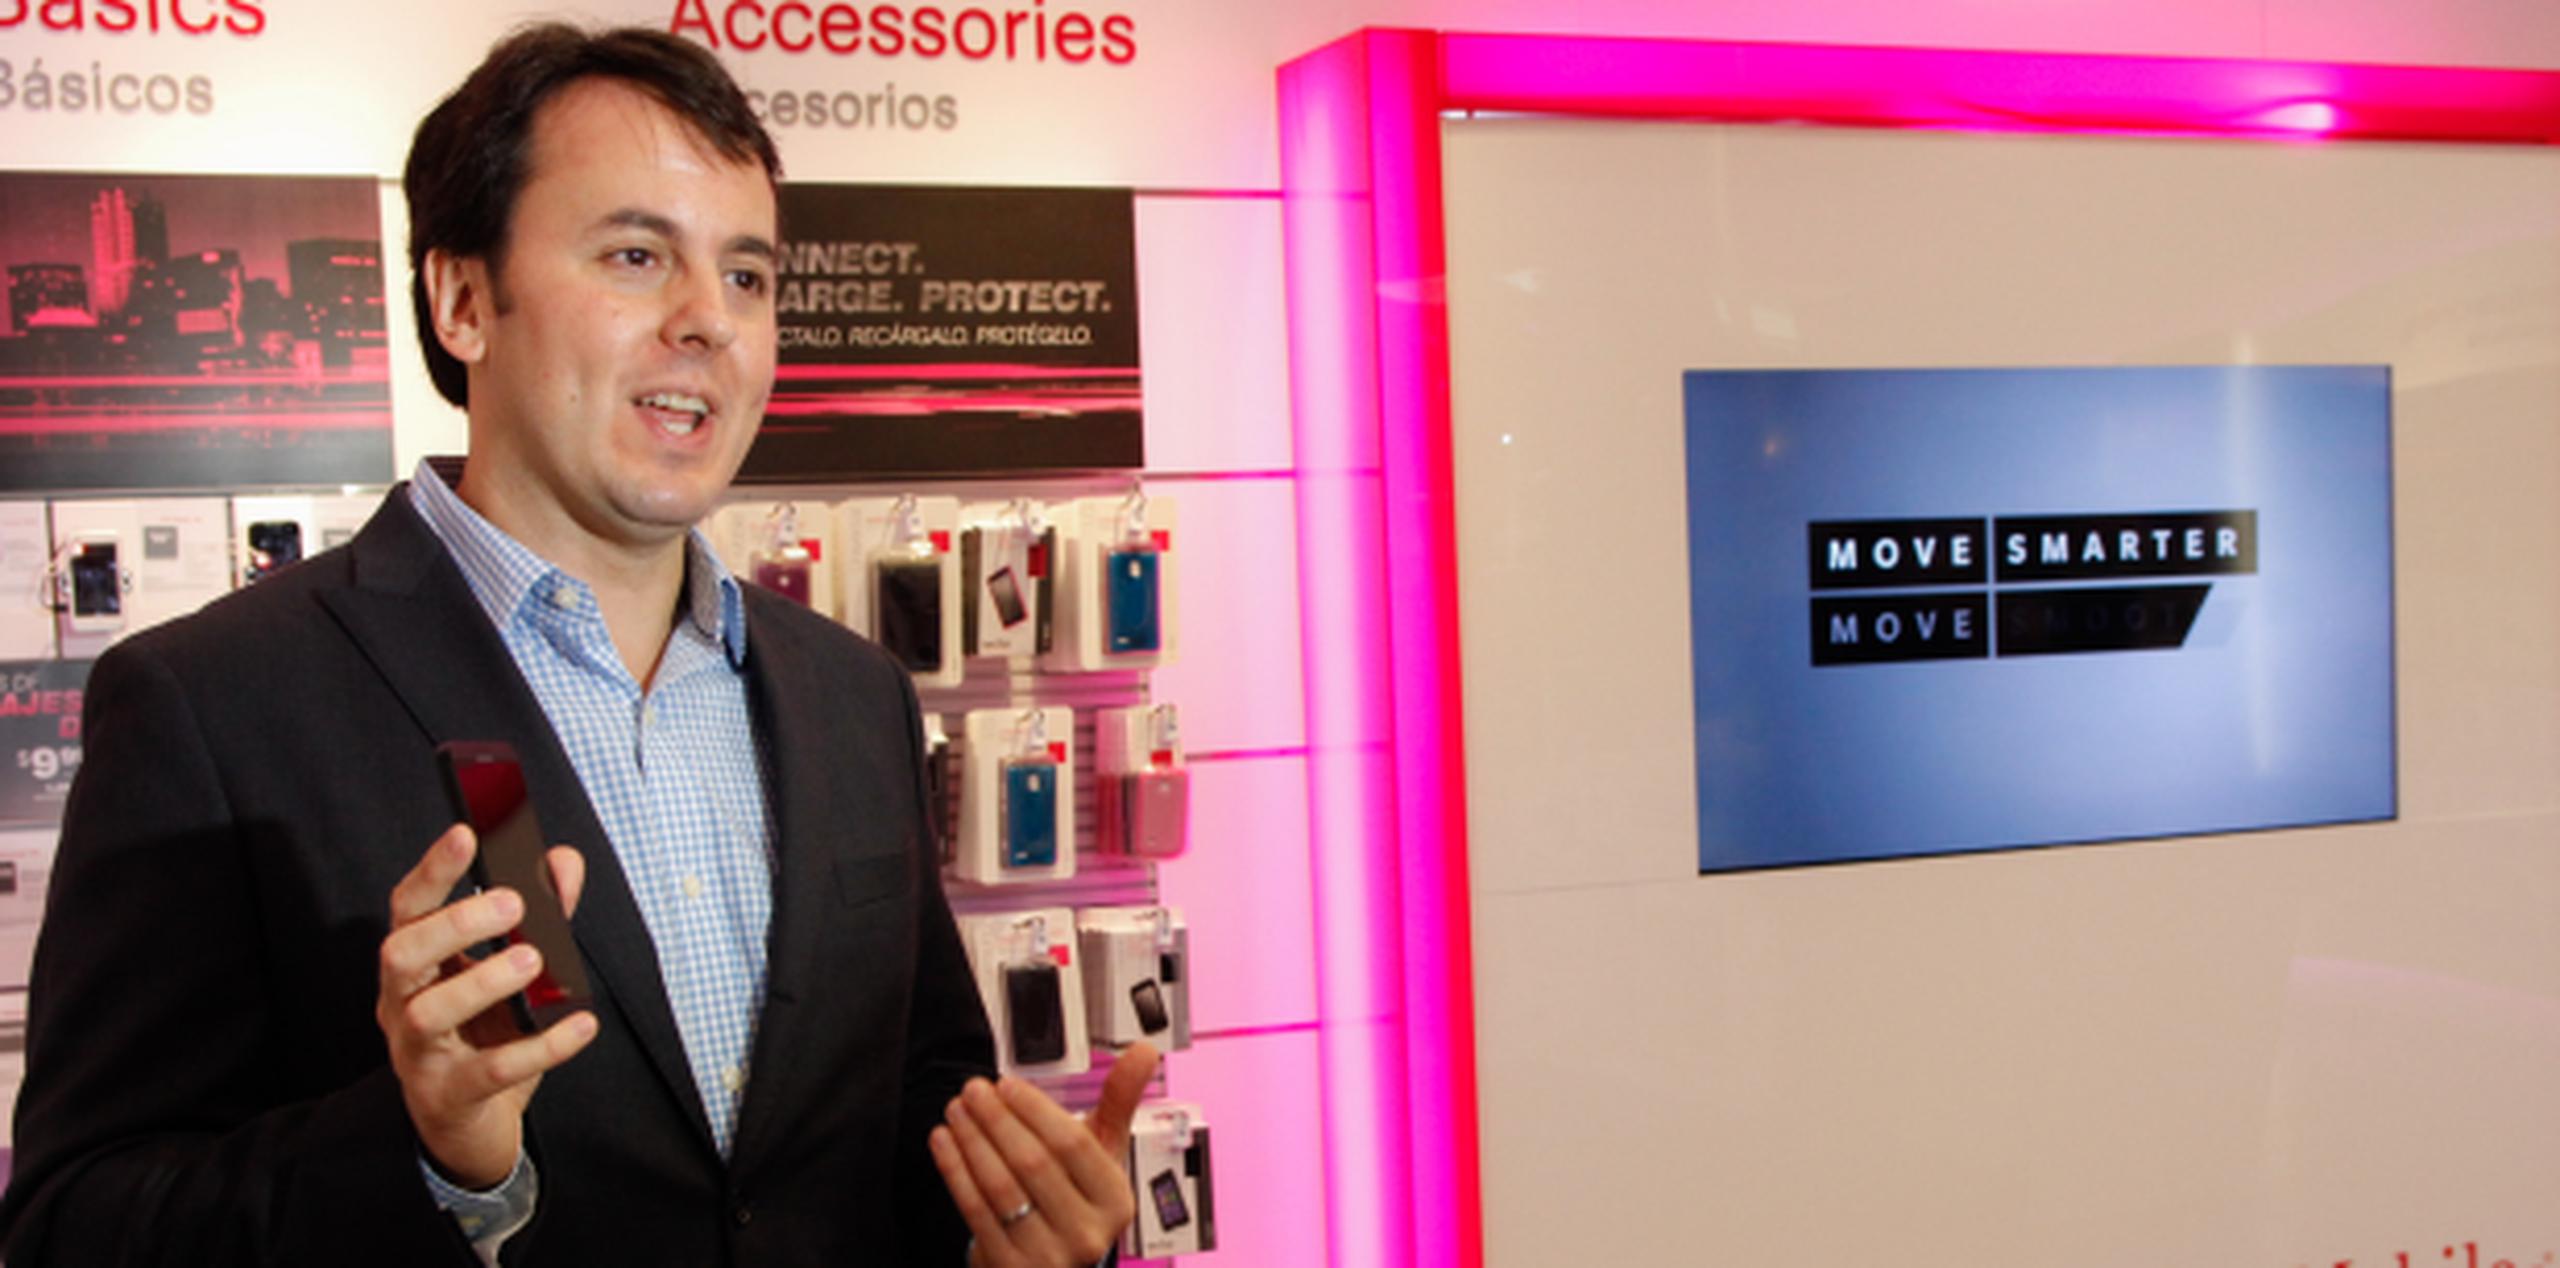 Jorge Martel, vicepresidente y gerente general de T-Mobile Puerto Rico, explicó que la compañía adquirió 10Mhz de espectro adicional para proveer un mejor servicio. (Suministrada)